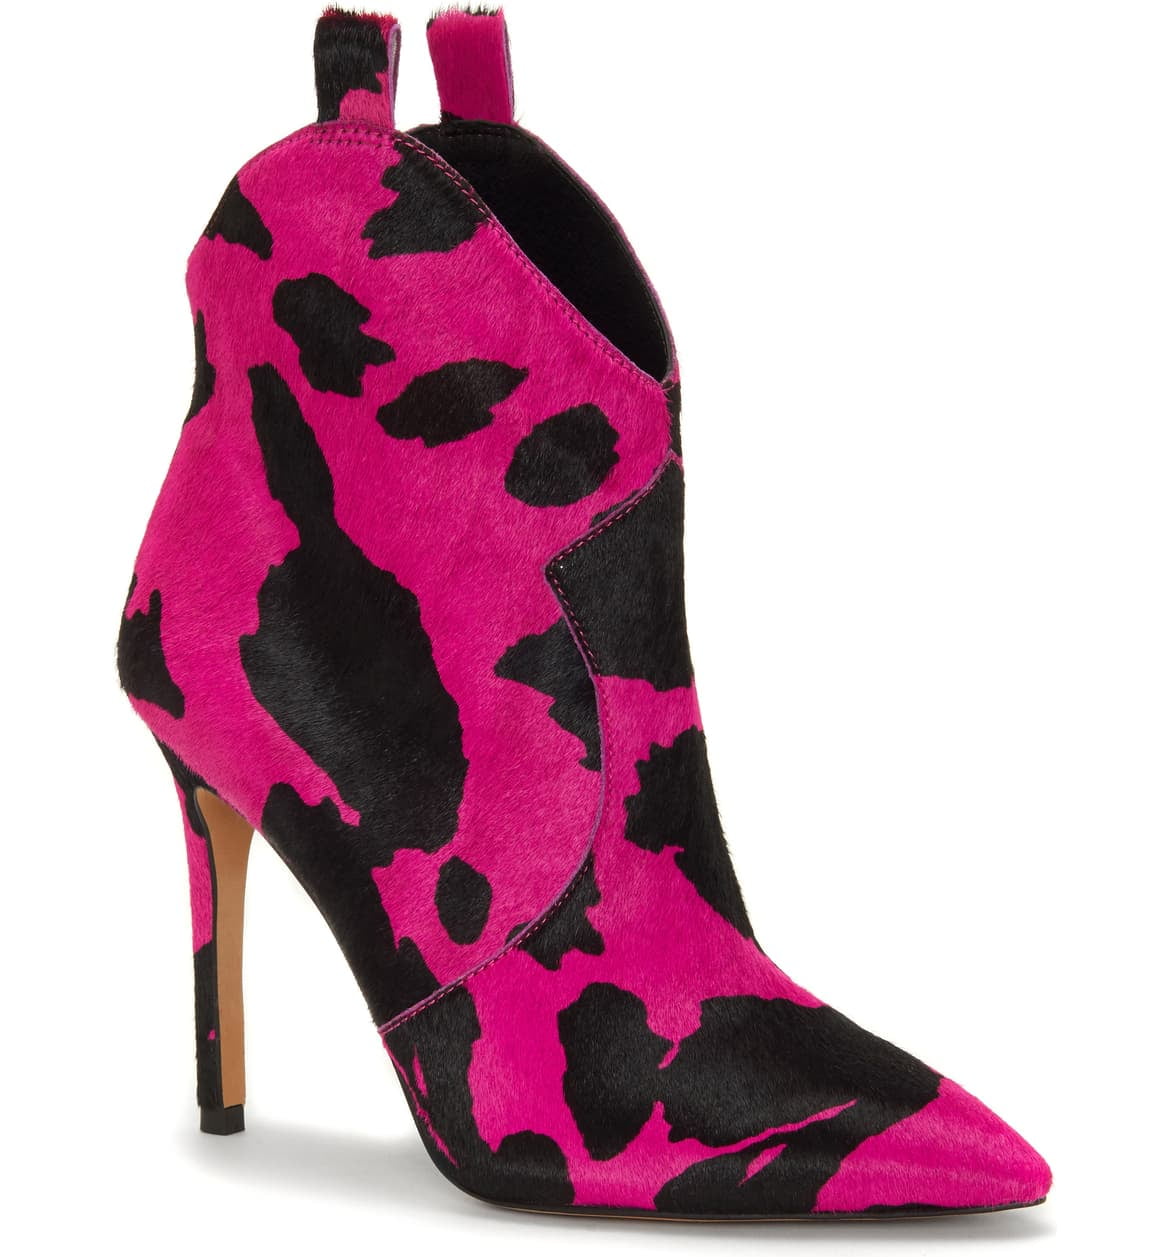 jessica simpson hot pink heels